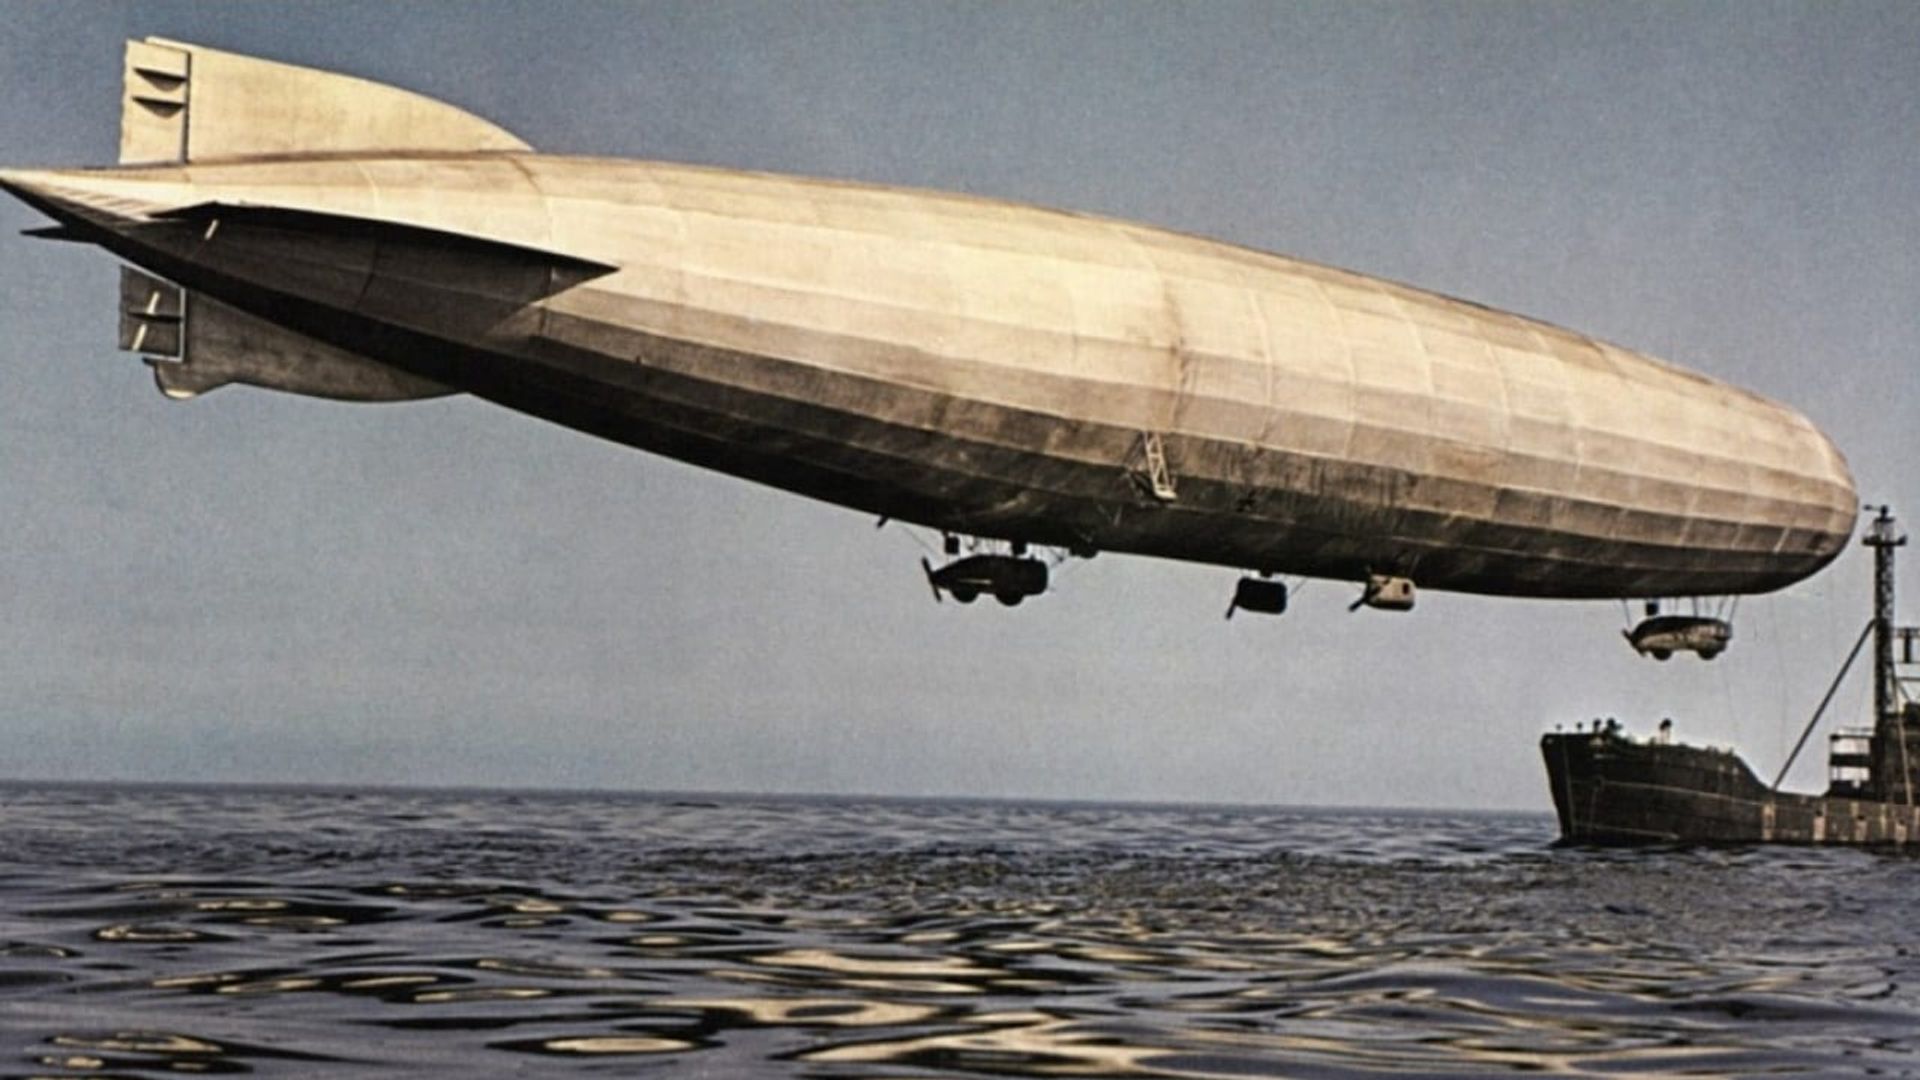 Zeppelin background